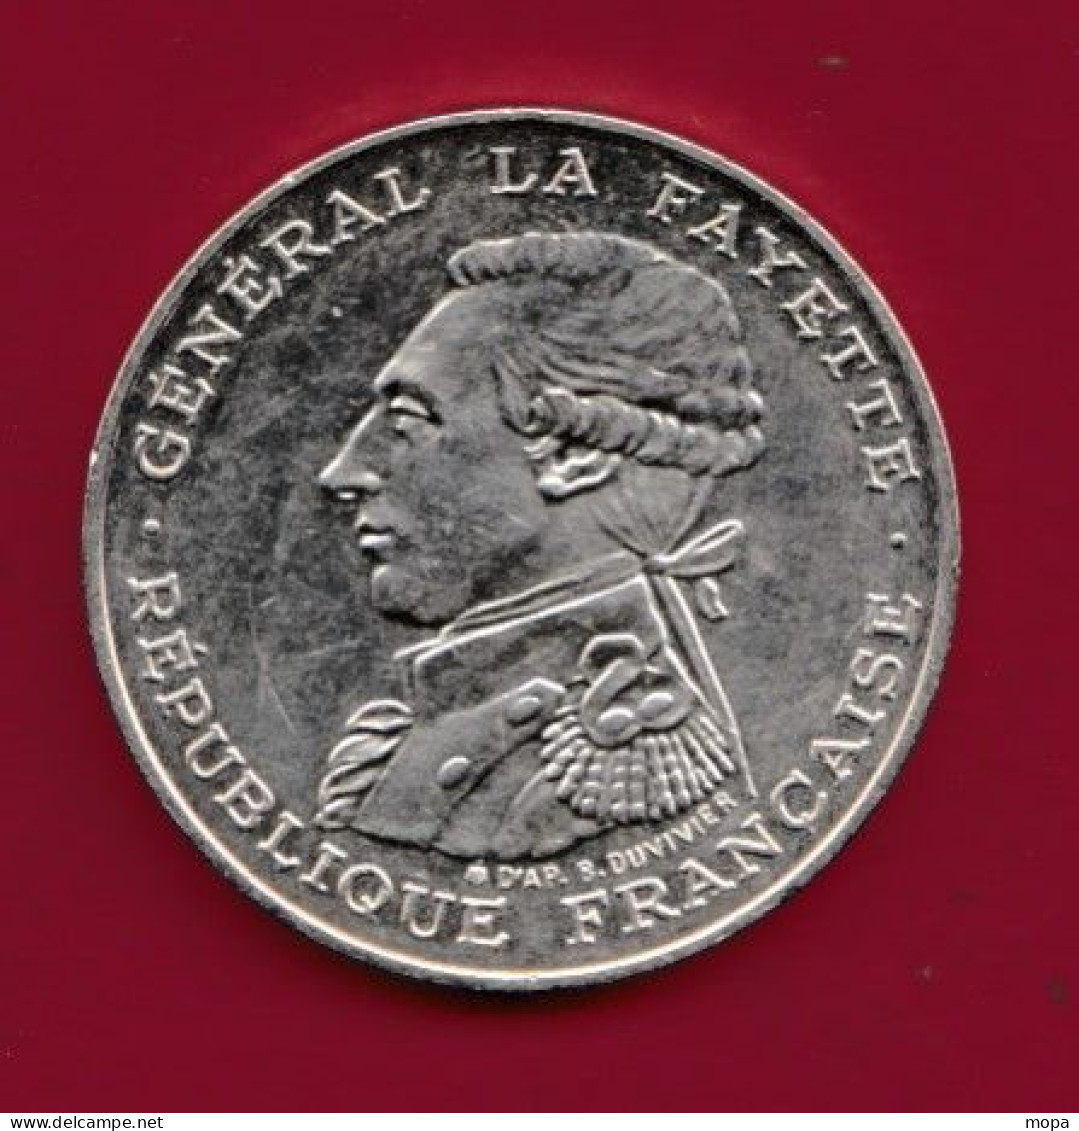 100 Francs---Argent--Général La Fayette--1987--SUP---(8) - 100 Francs